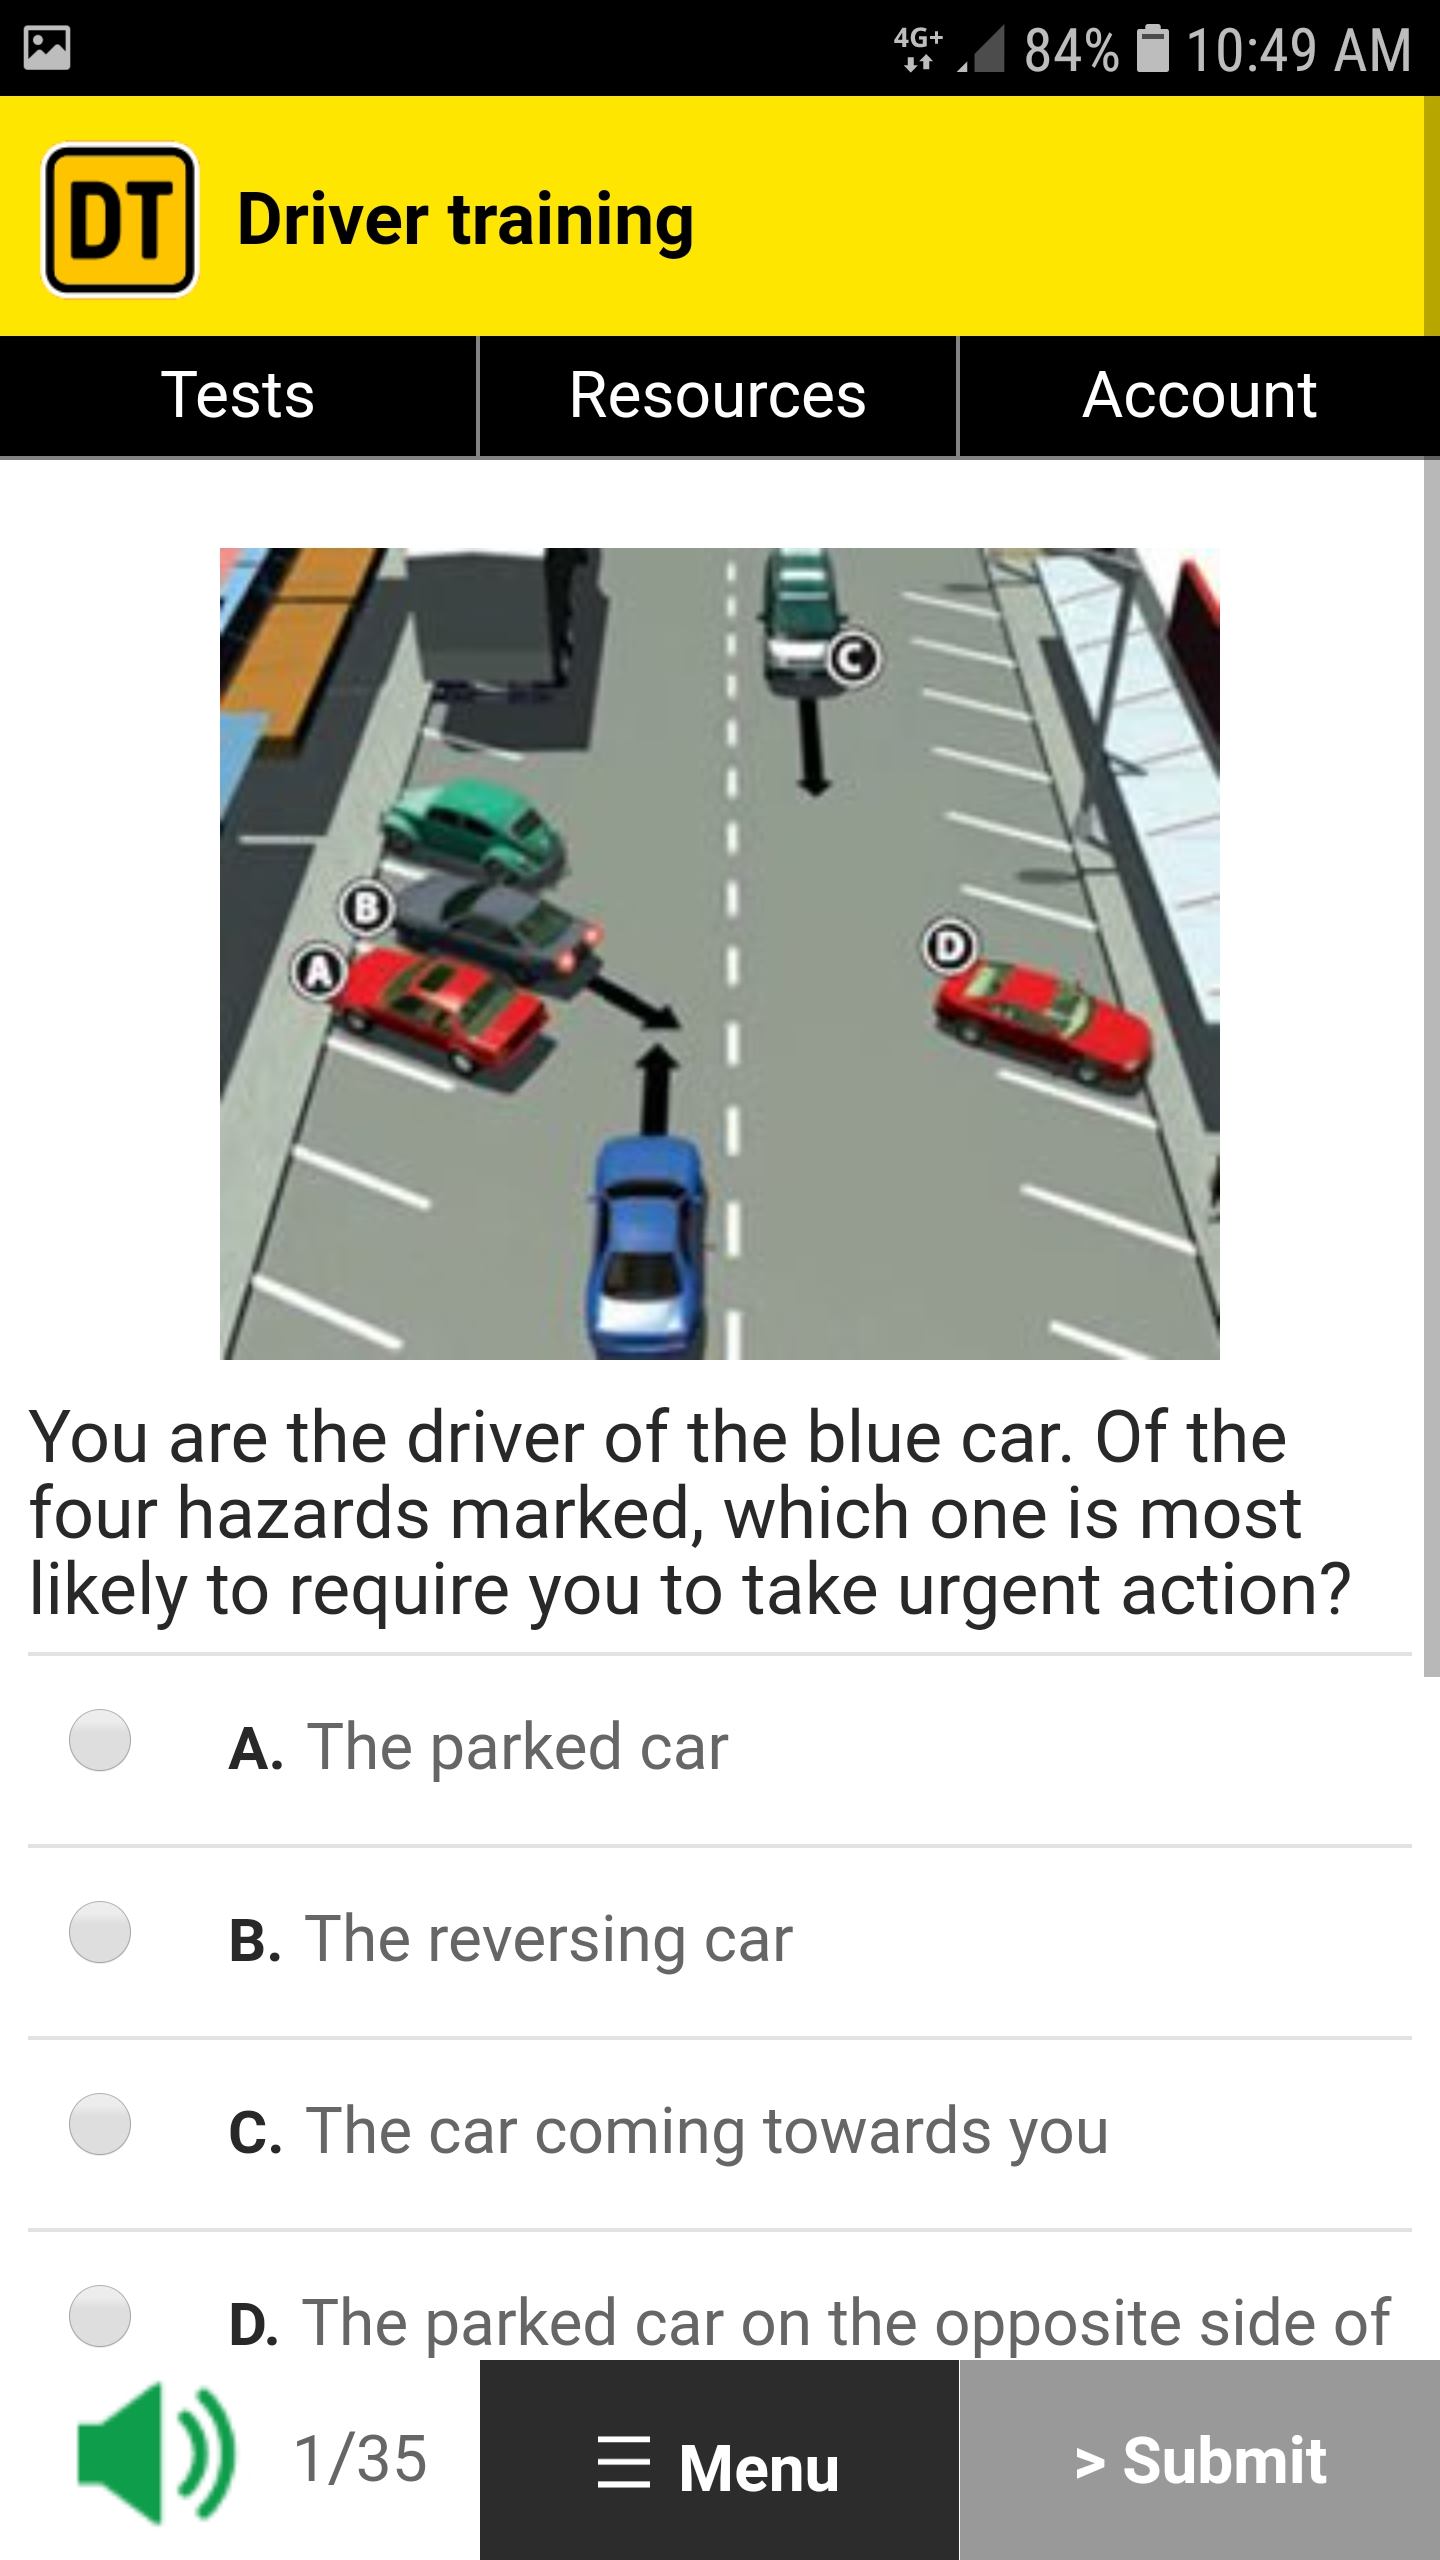 ¿Se puede aprender a conducir usando una aplicación o en línea?